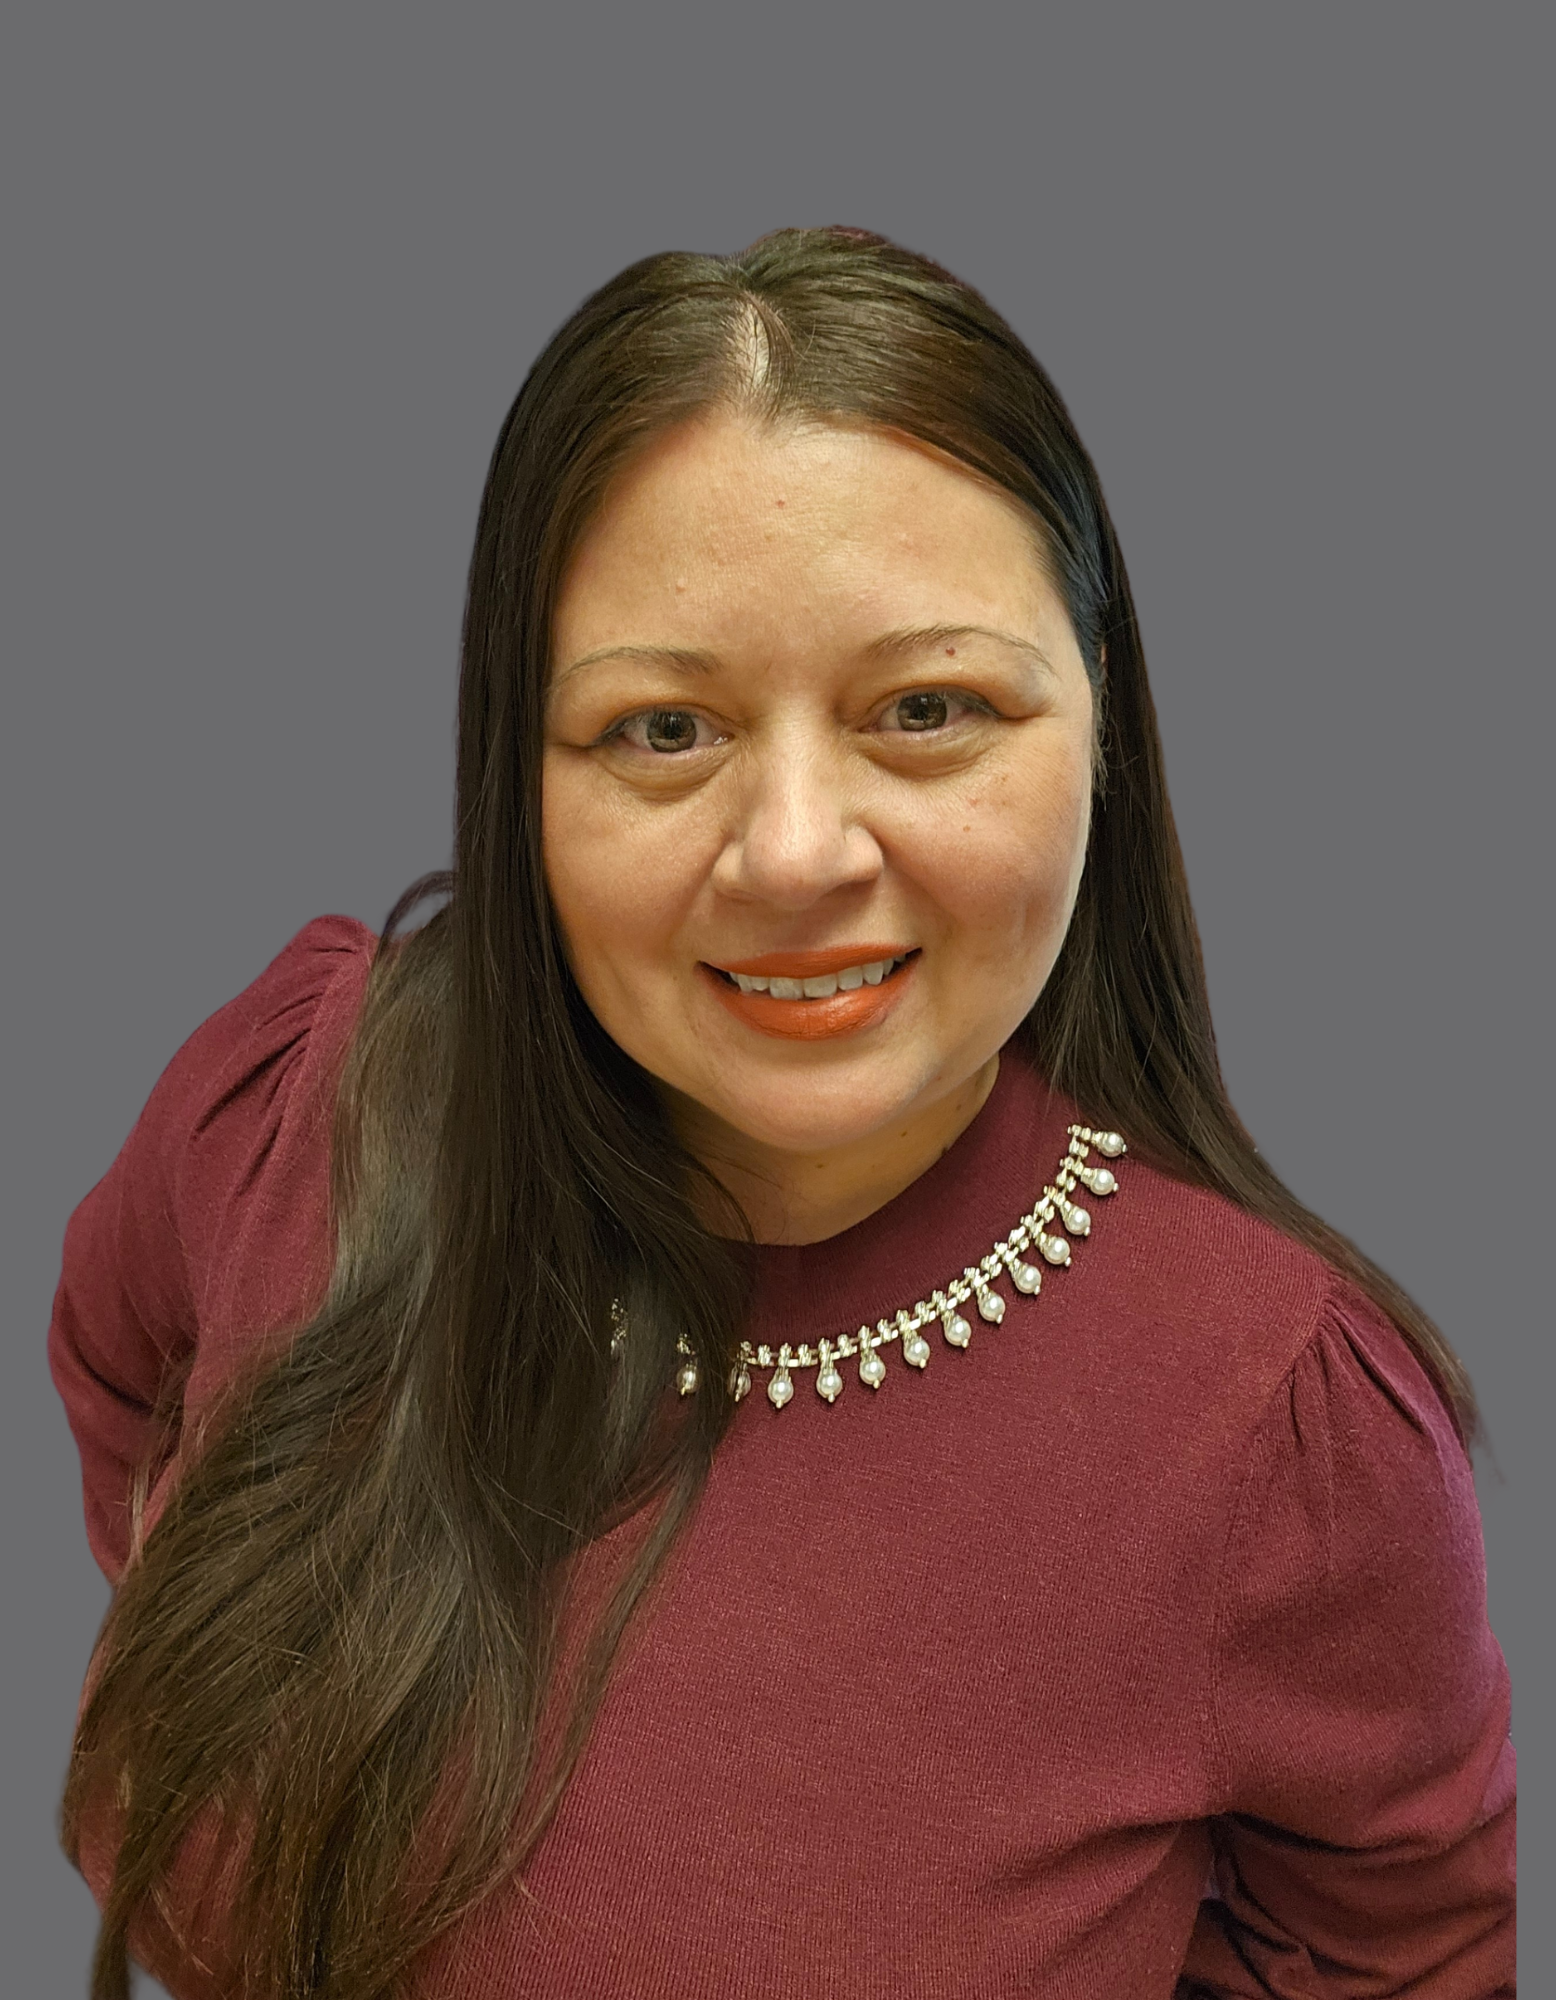 Sara Morales, Associate Director